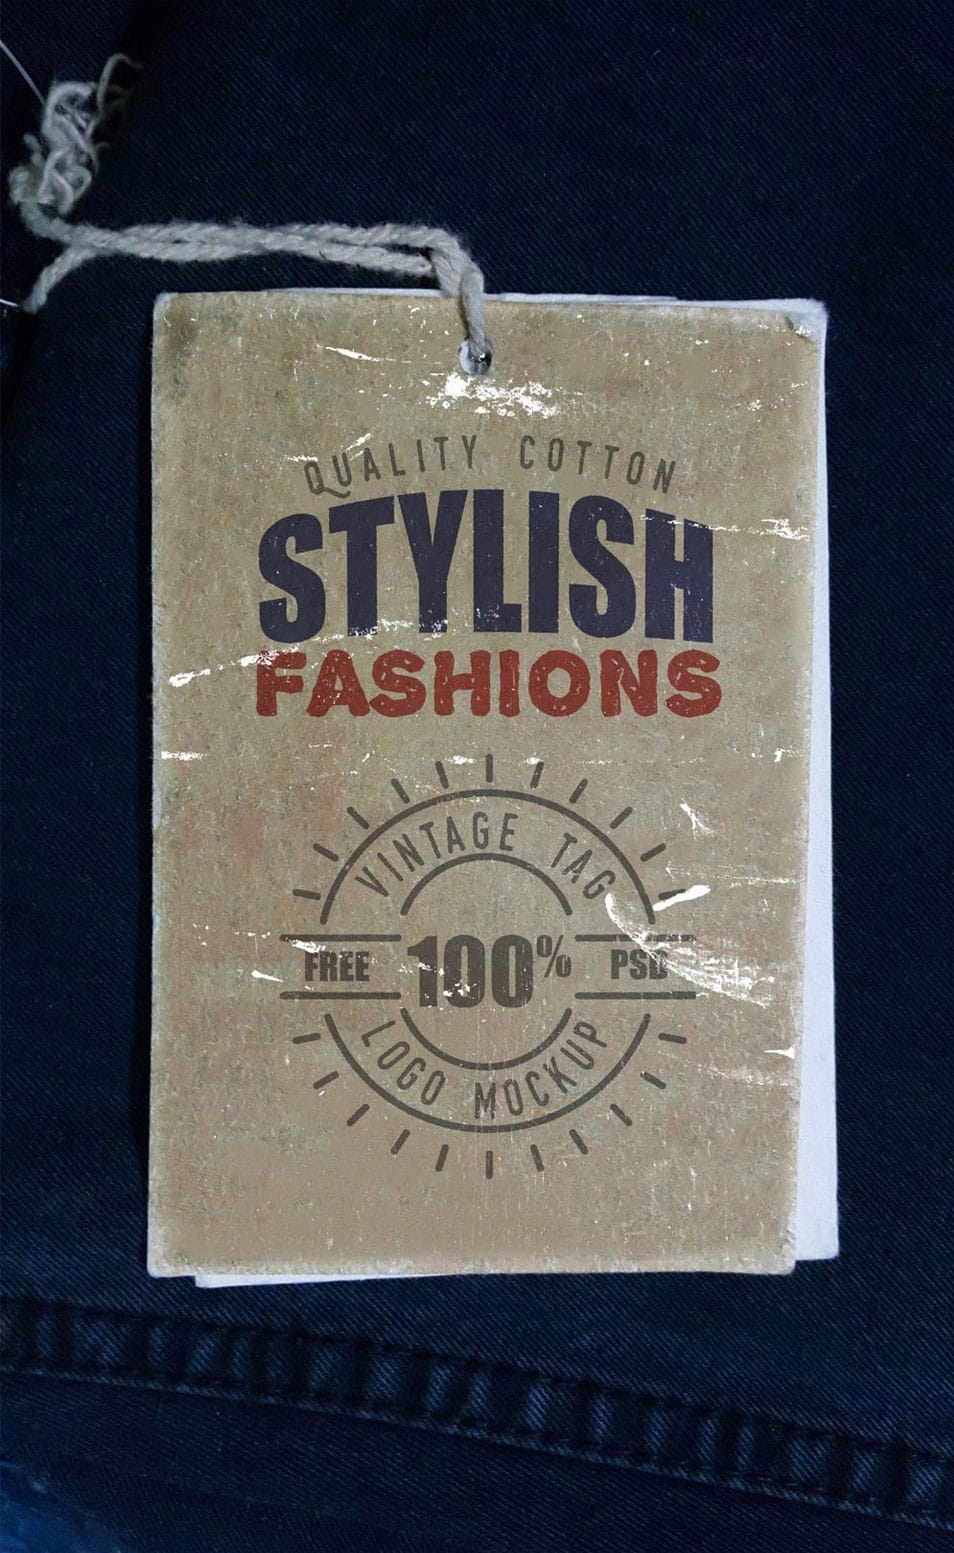 Vintage Clothing Label Mockup PSD